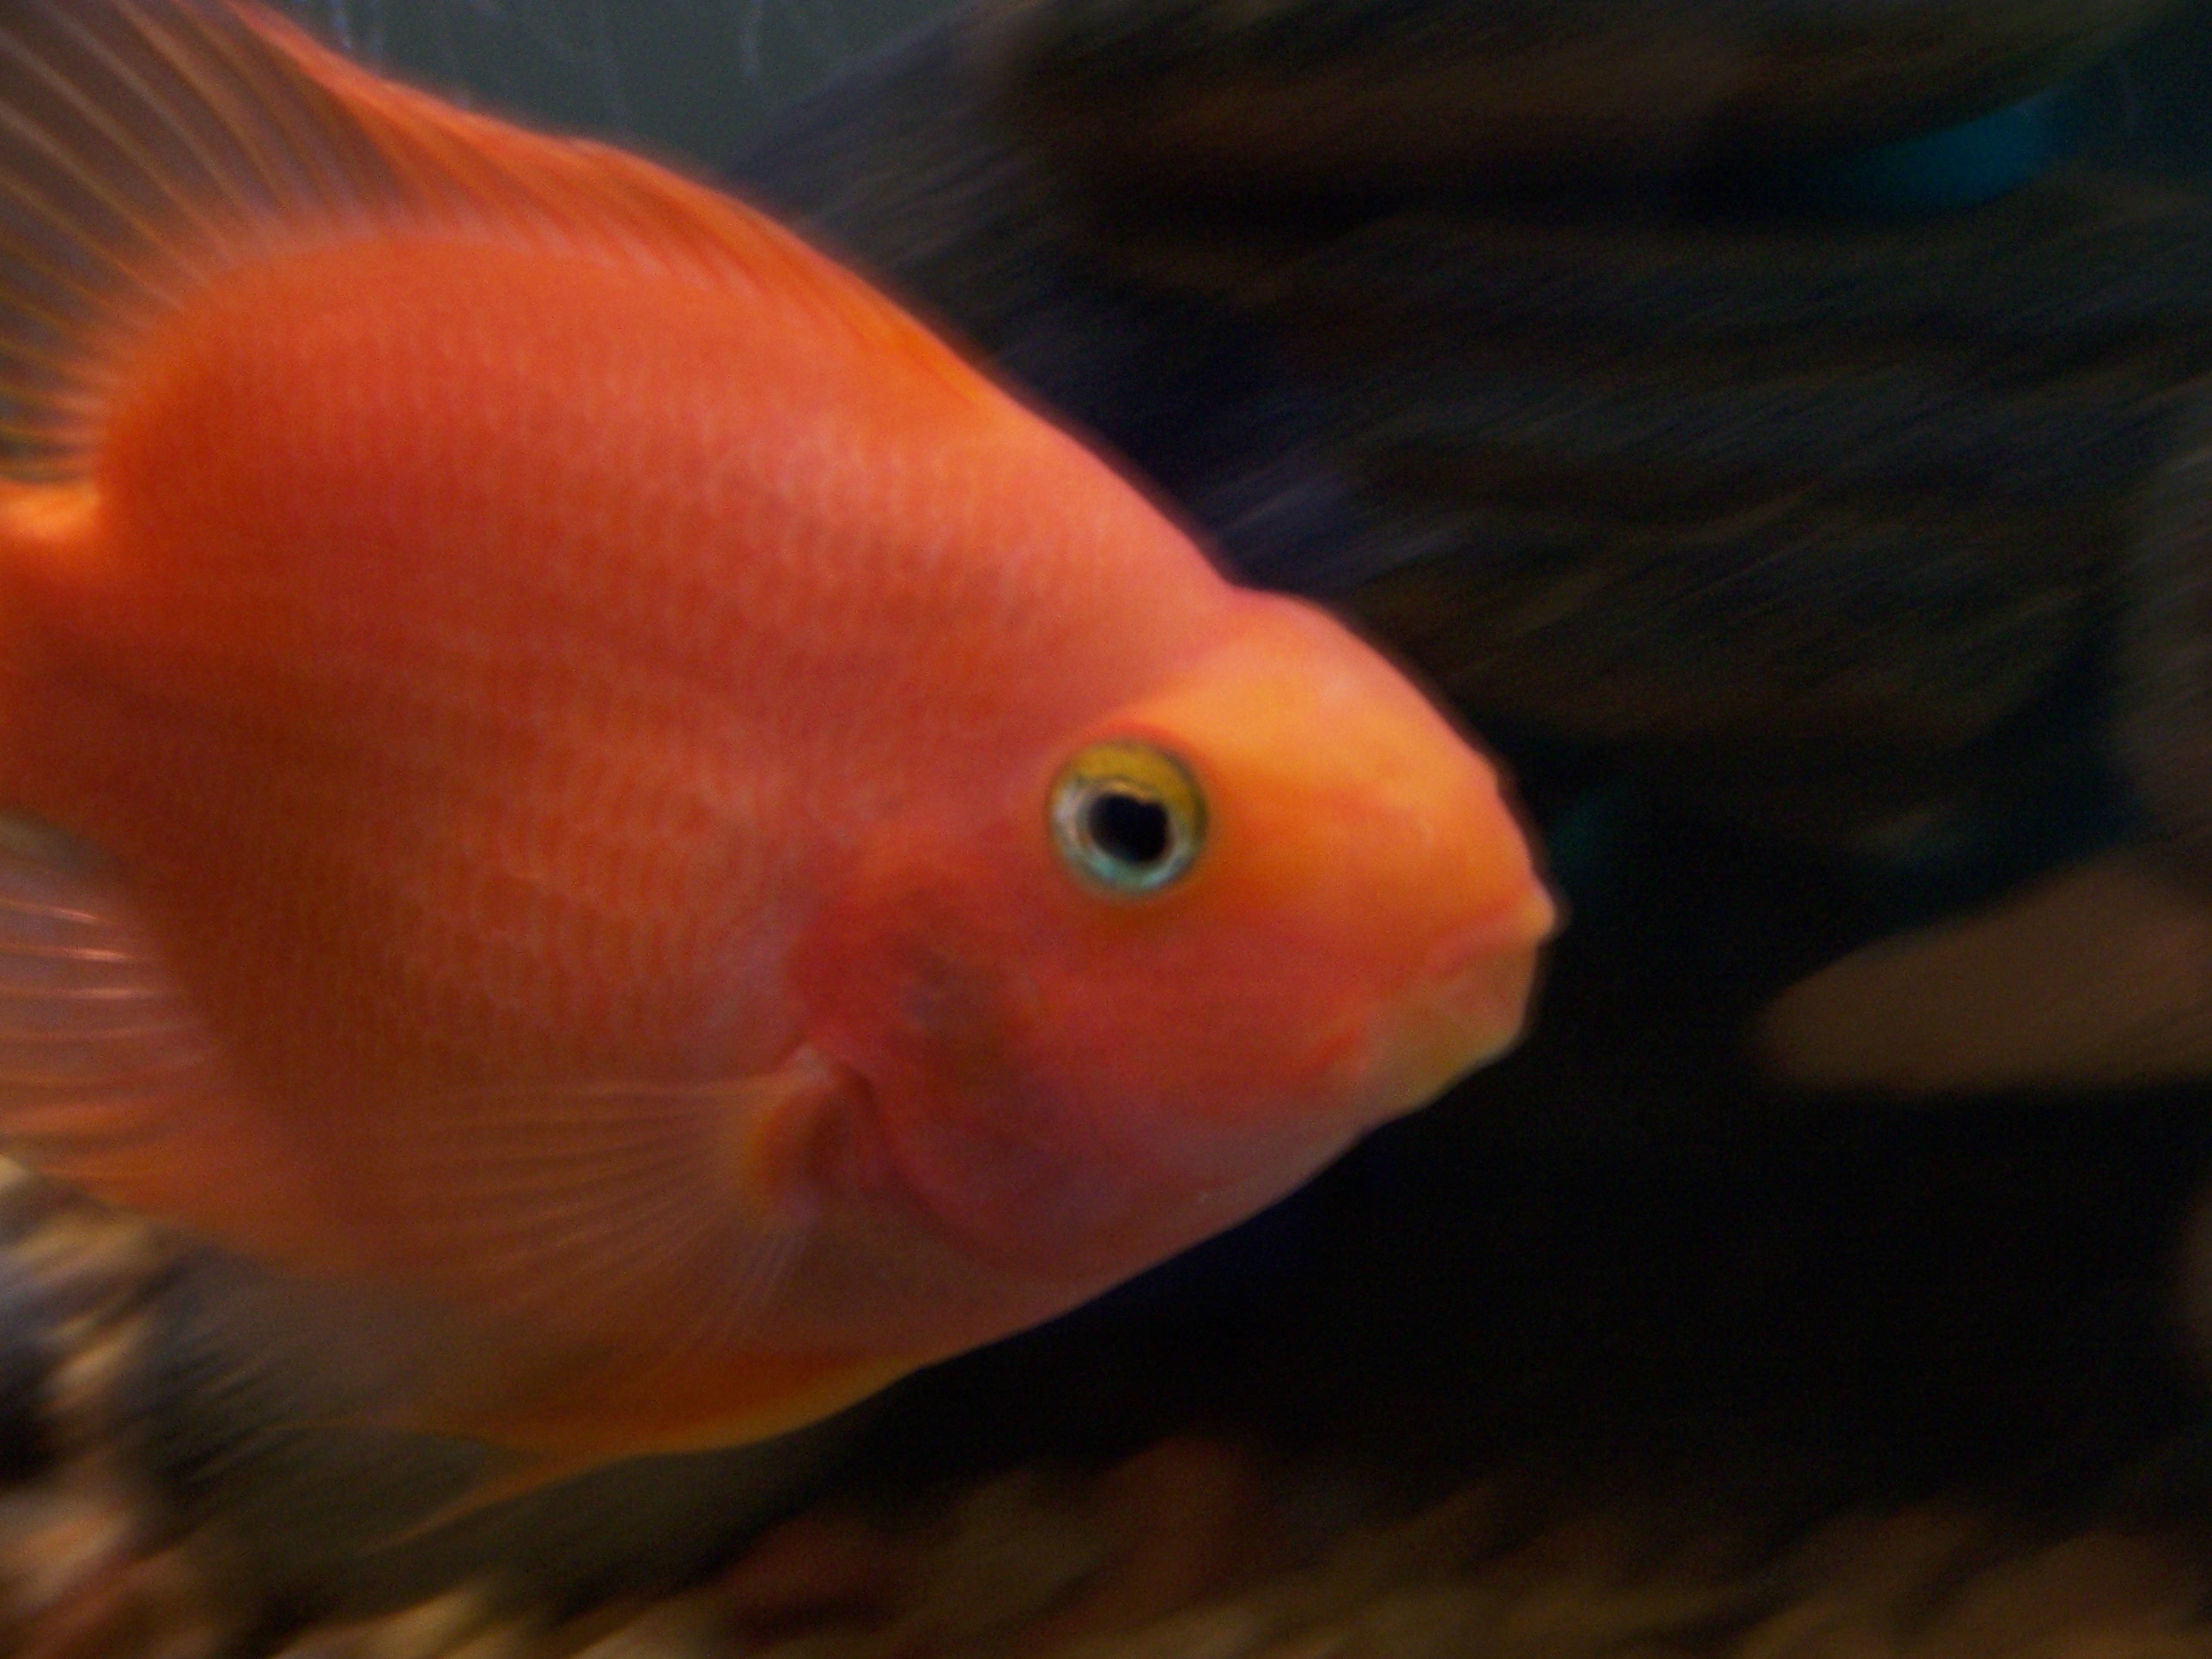 orange parrot fish